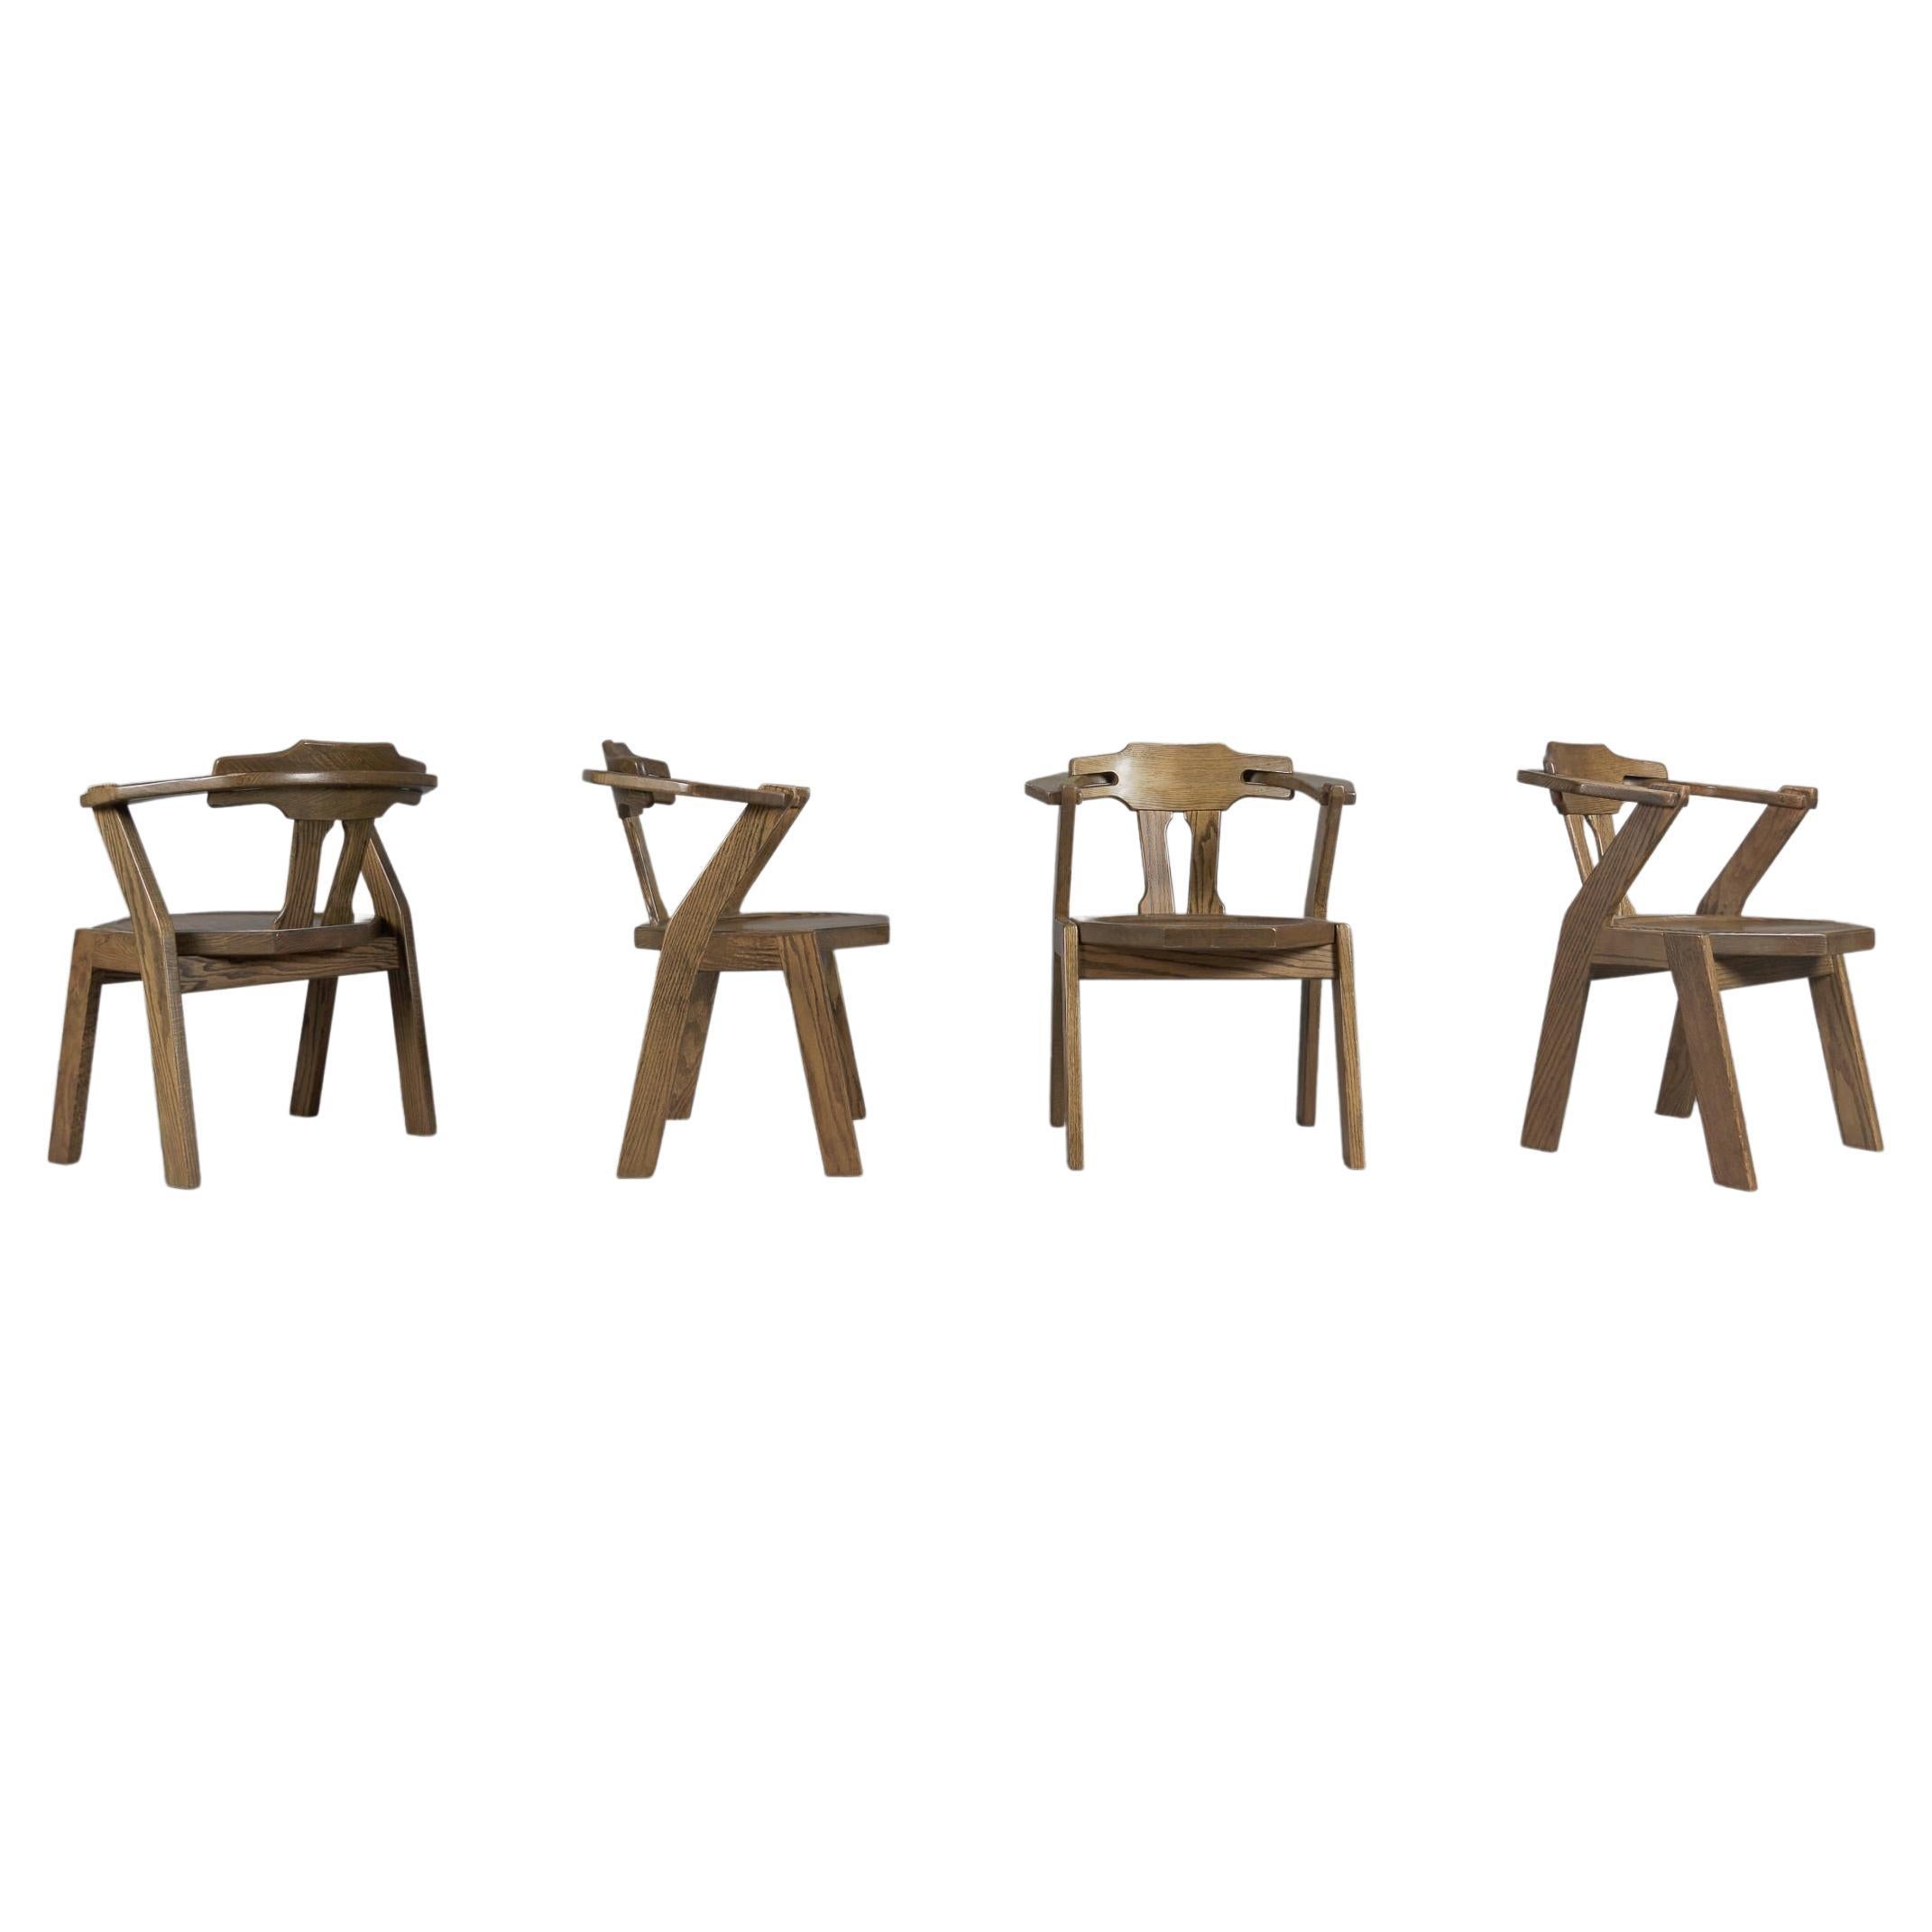 Brutalistischer Satz von 4 Stühlen mit Armlehnen aus Eiche, 1960er Jahre